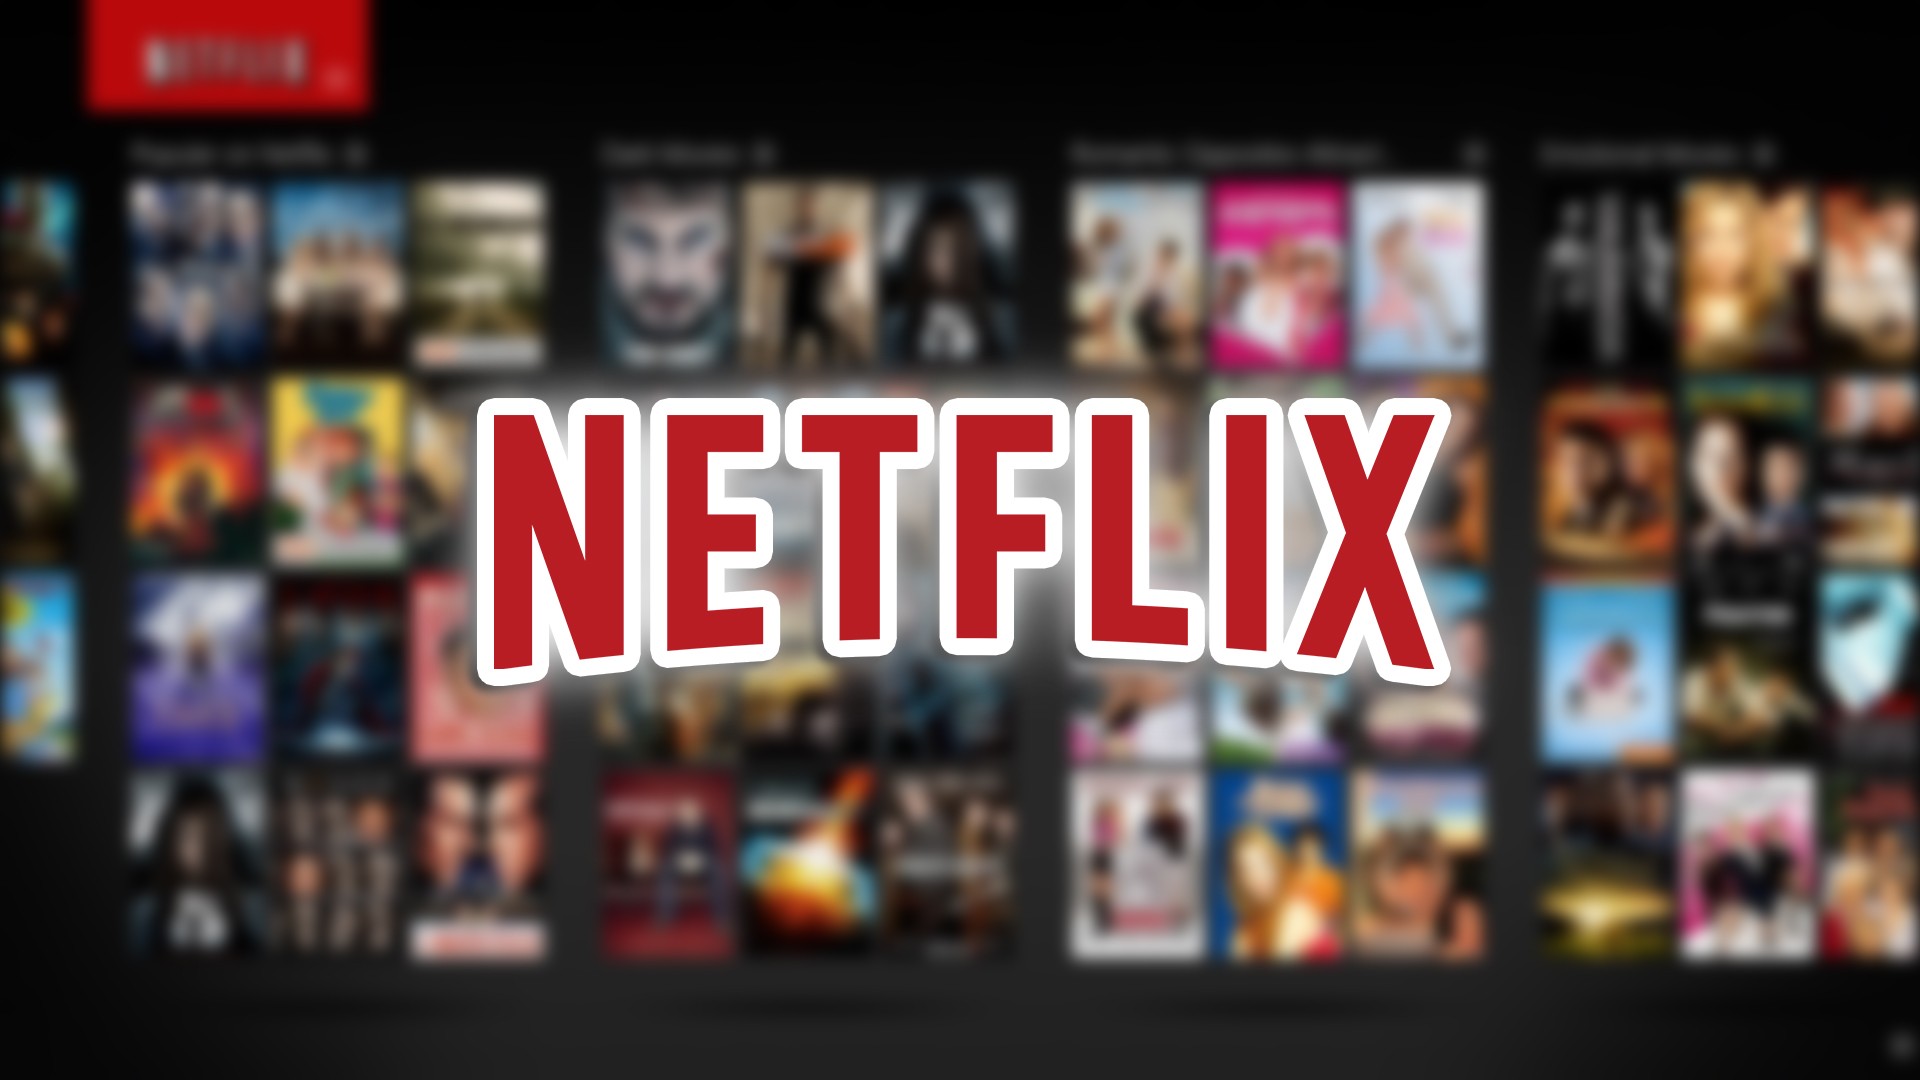 Códigos da Netflix: como descobrir categorias secretas de filmes e